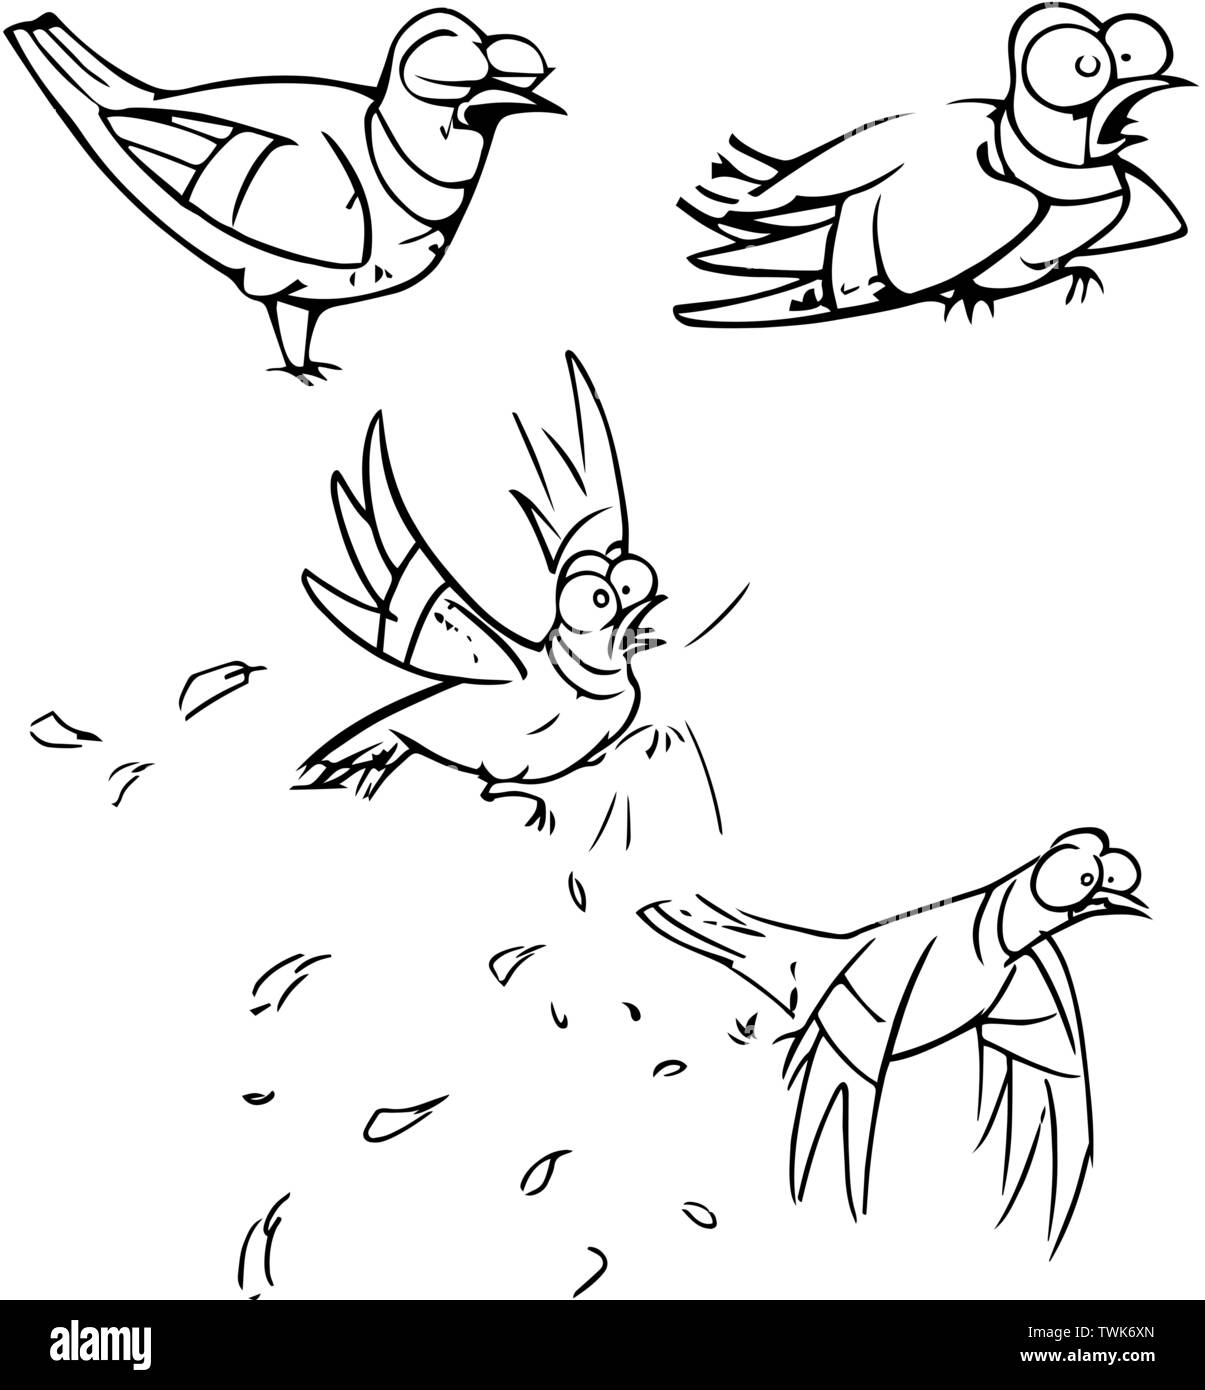 Sur vector illustration funny cartoon oiseau dans diverses poses. Faites un contour noir, dans le style d'un sketch, isolé sur un fond blanc. Illustration de Vecteur